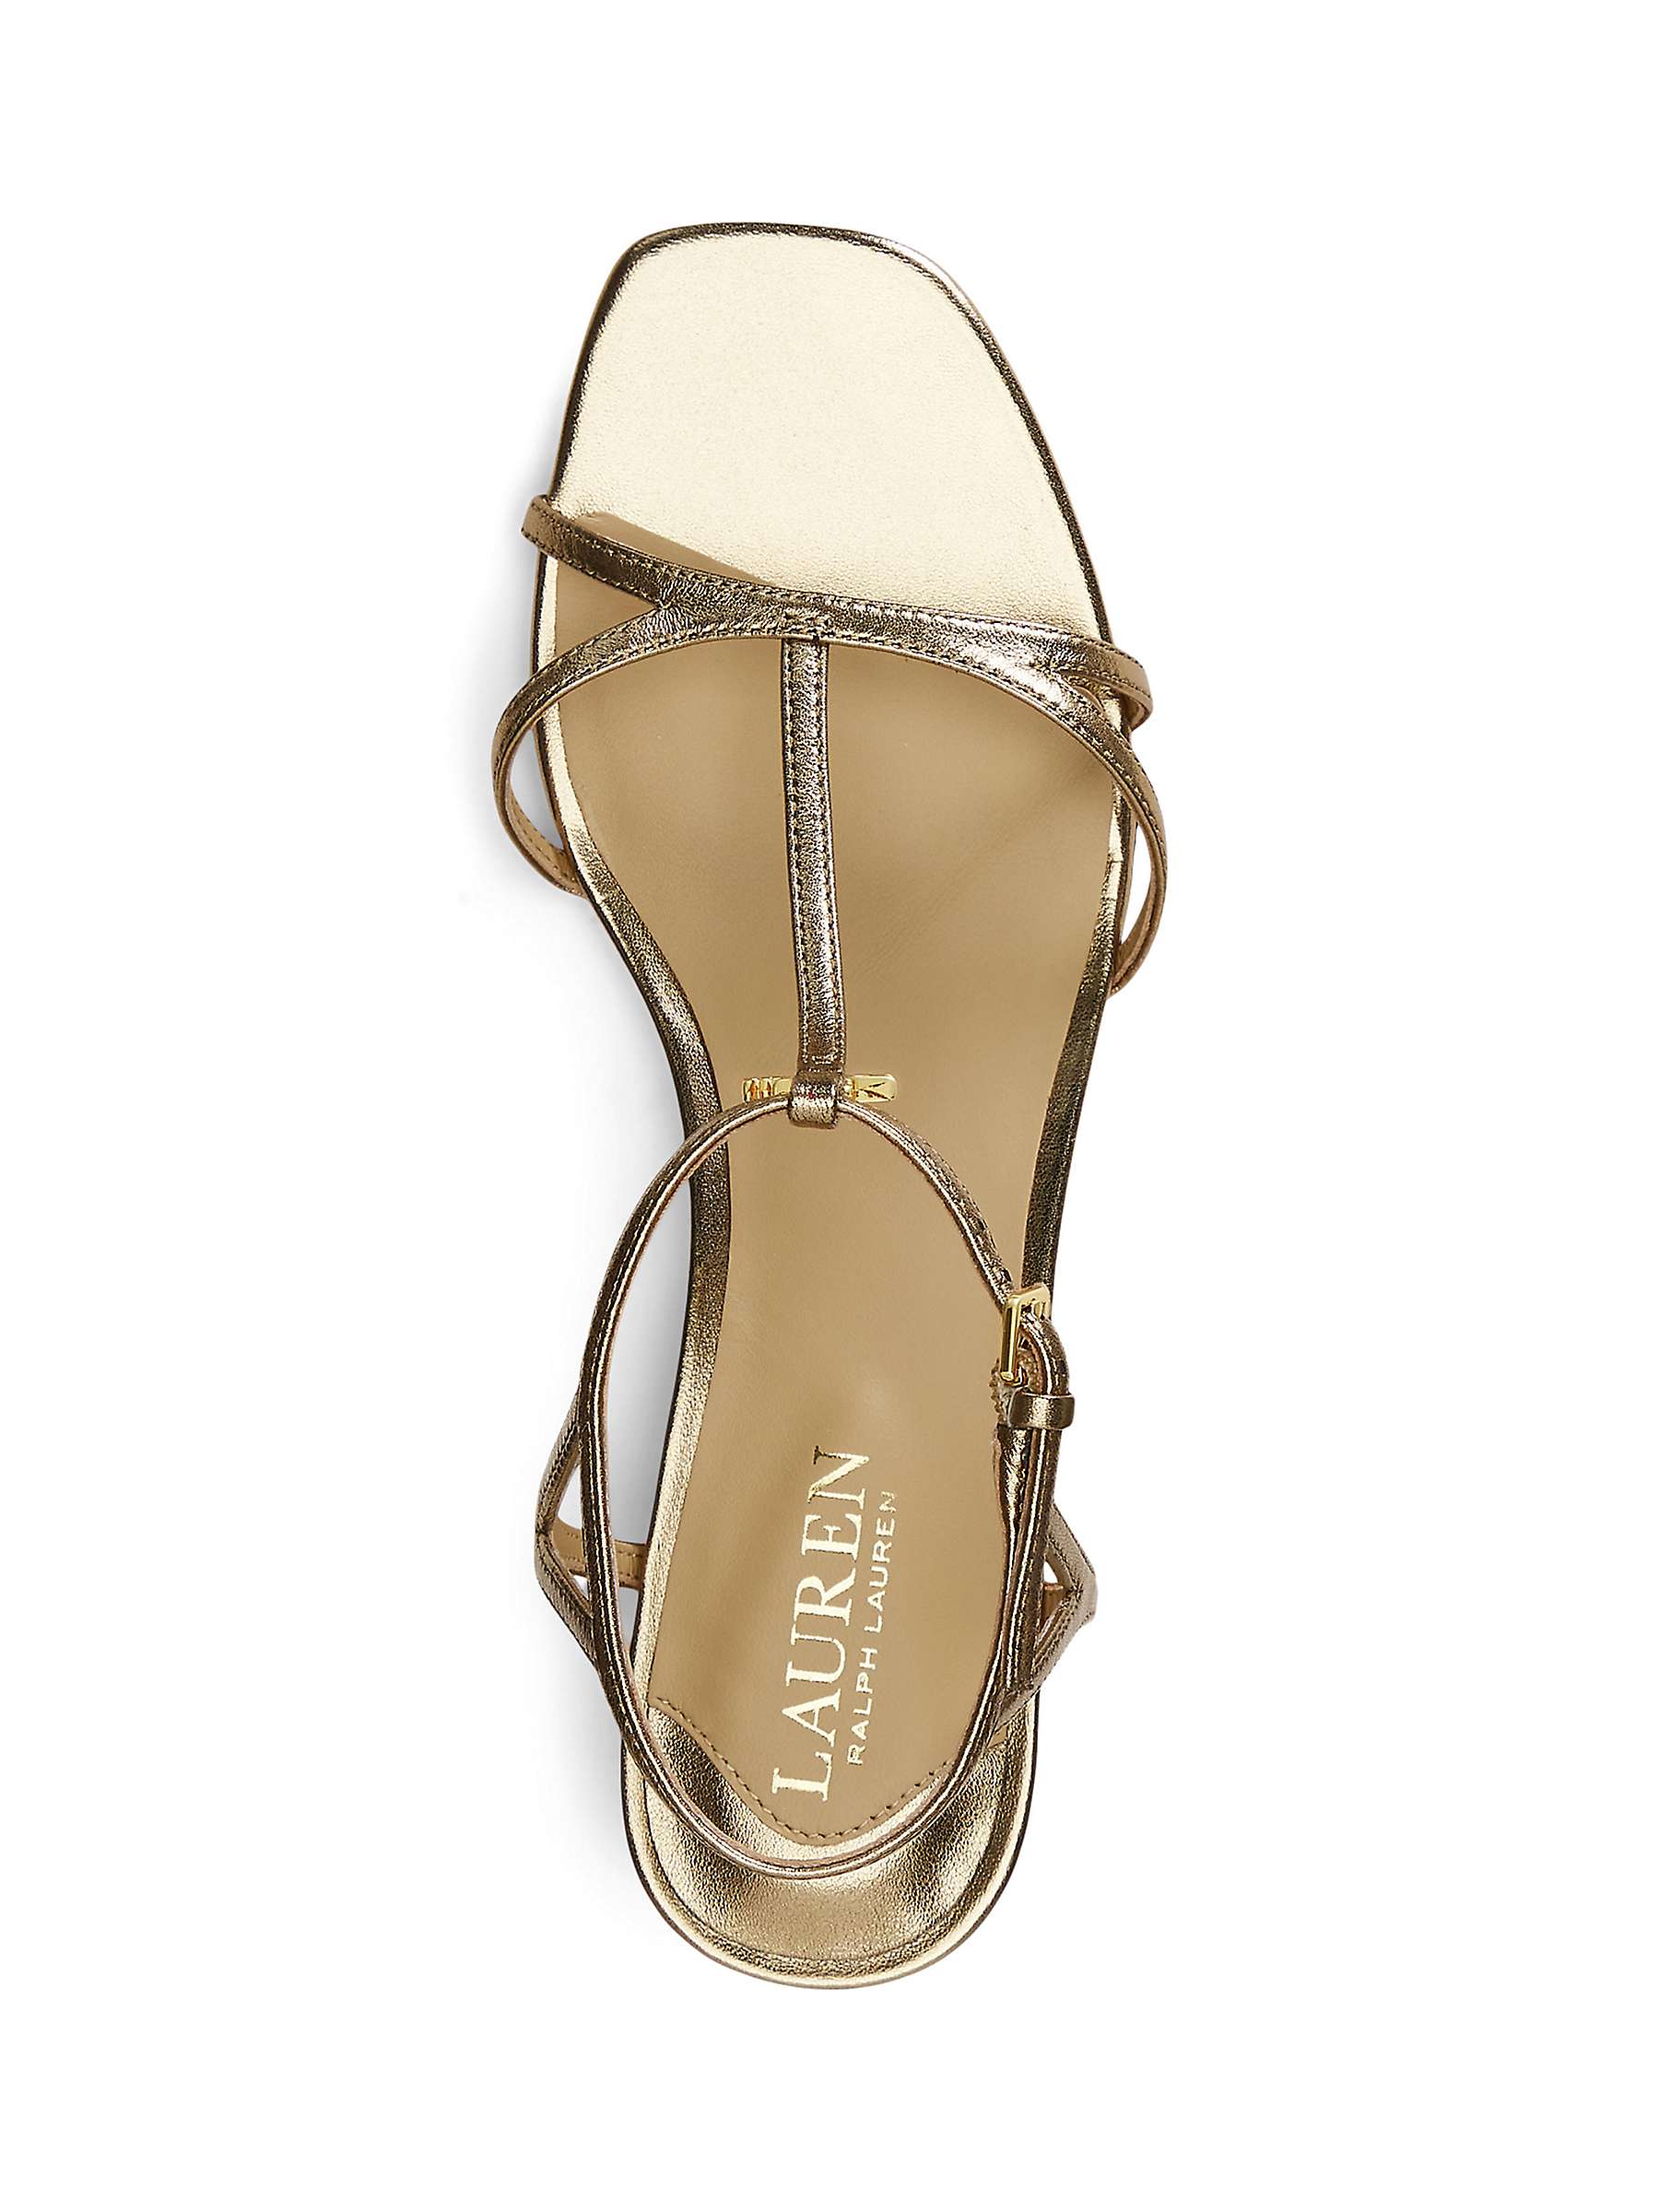 Buy Lauren Ralph Lauren Fallon Block Heel Leather Sandals, Soft Bronze Online at johnlewis.com